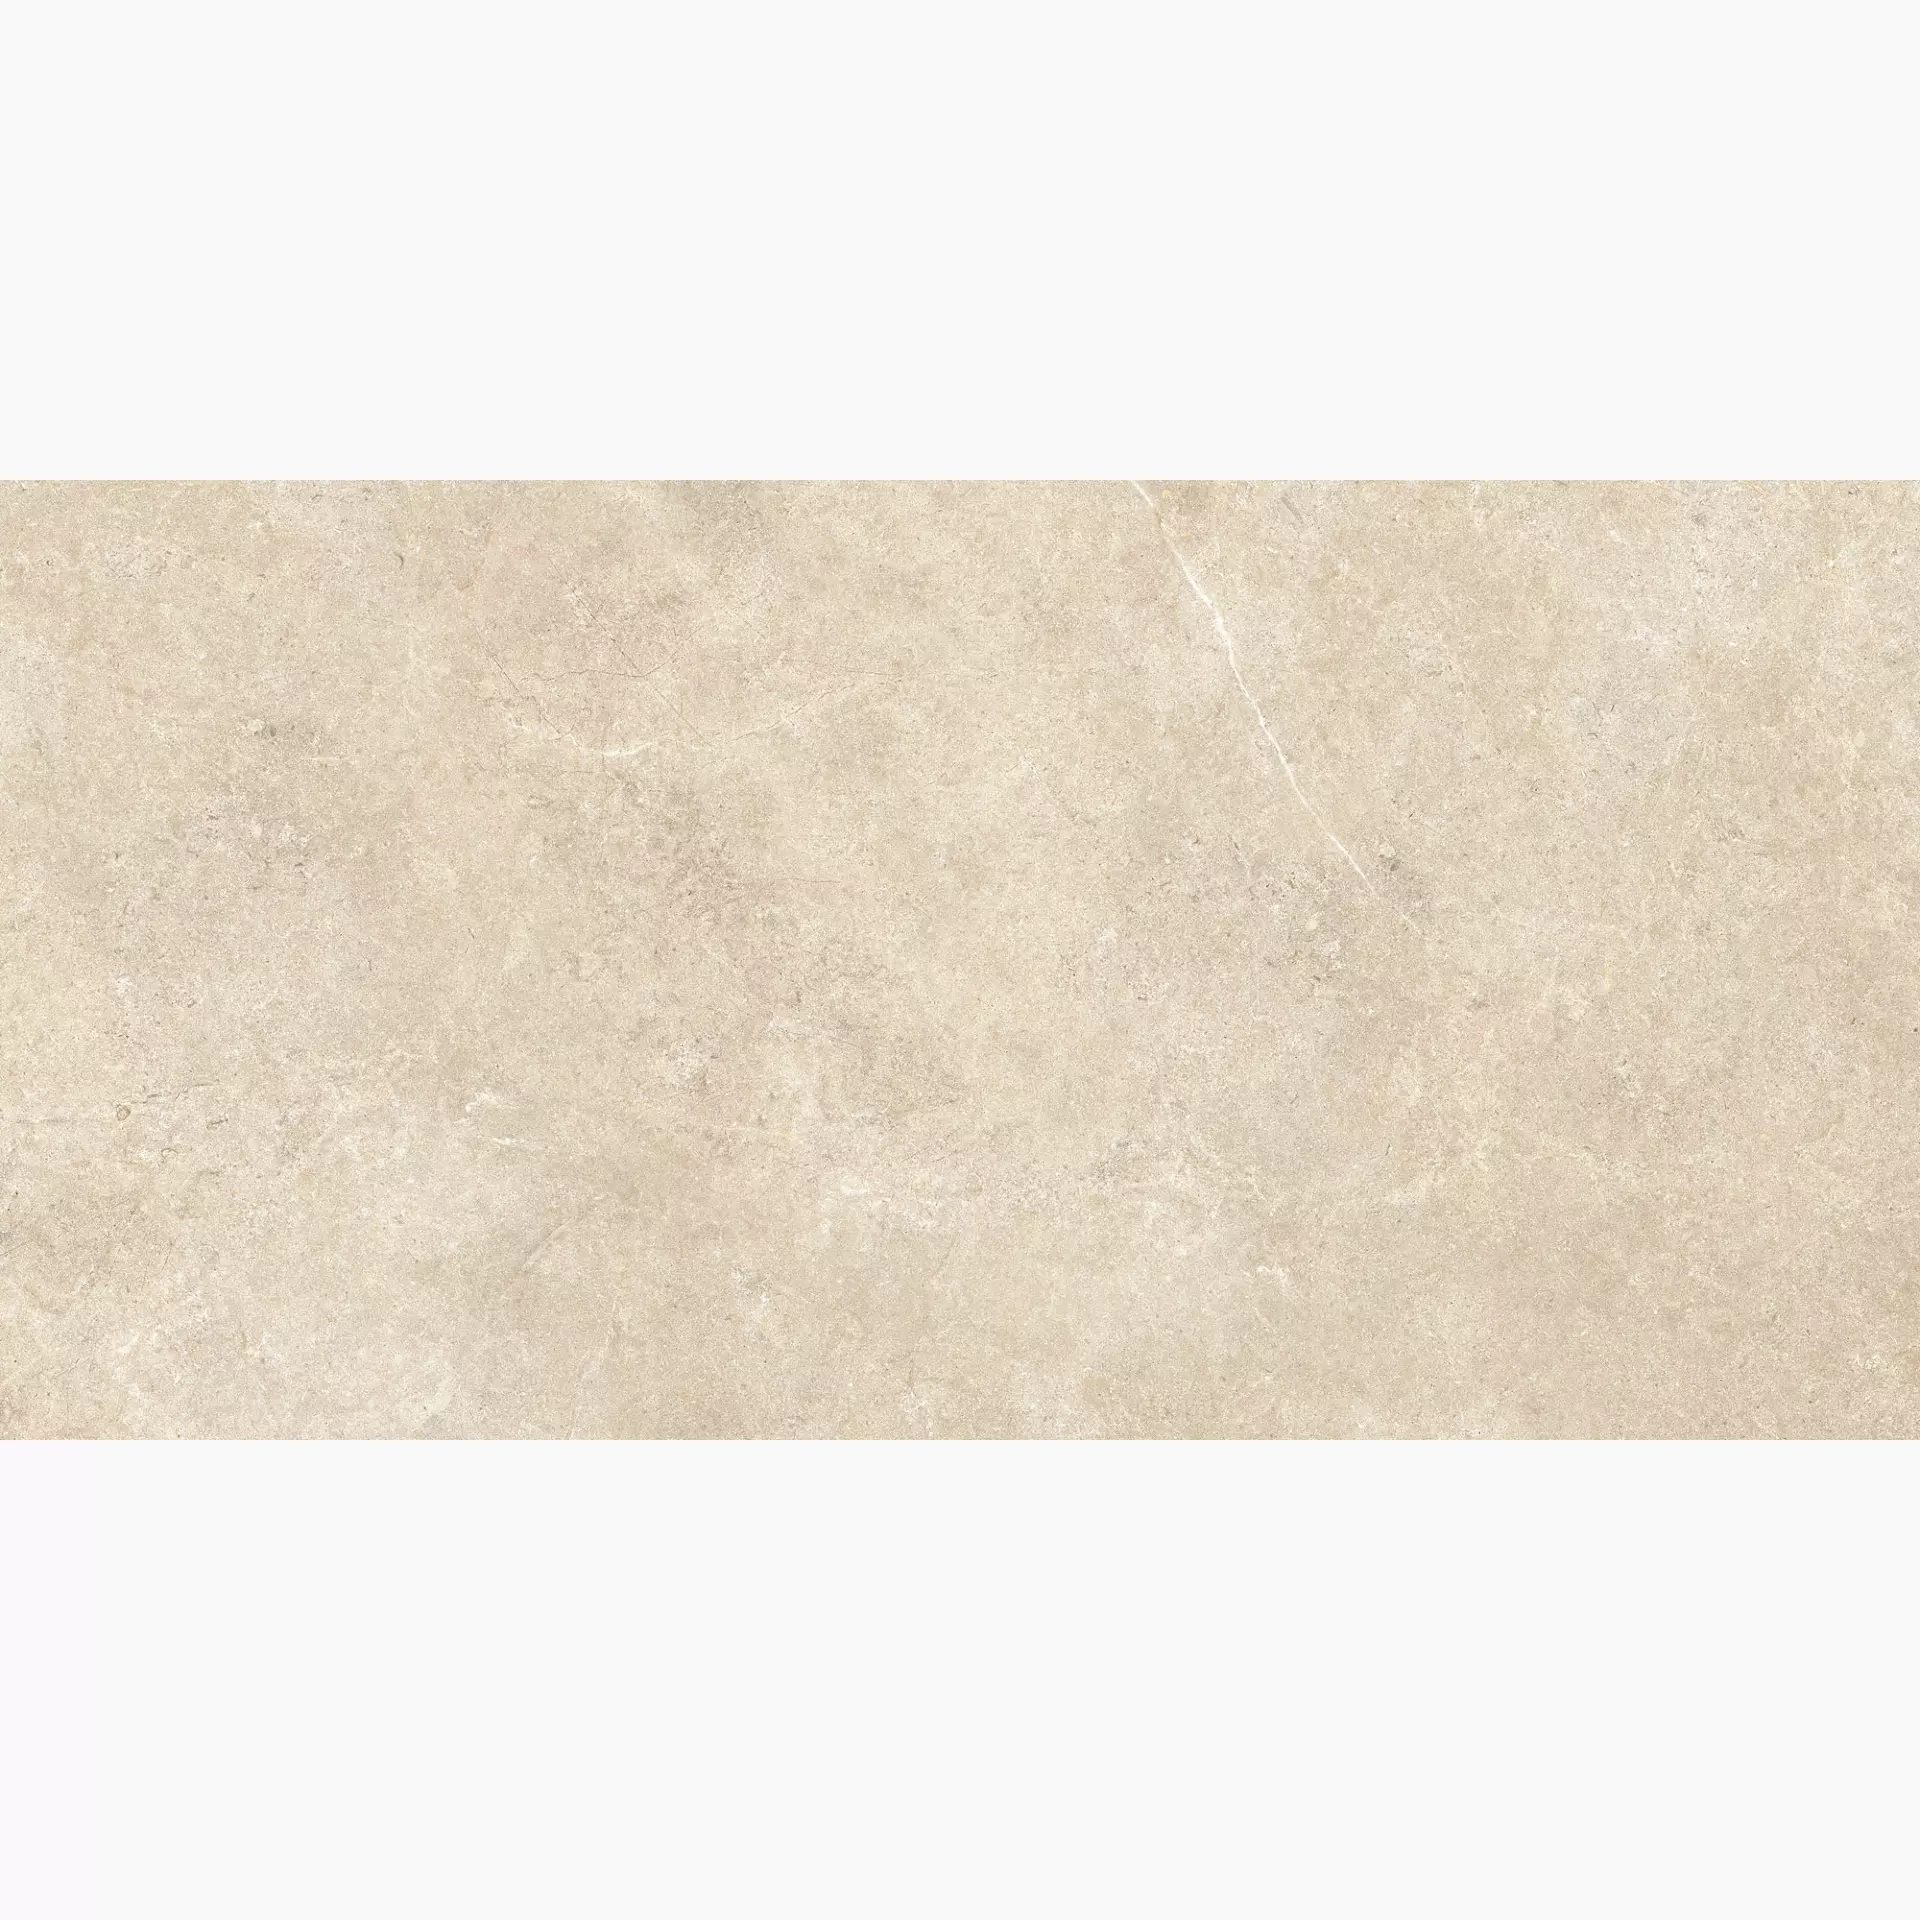 Ragno Realstone Argent Sabbia Naturale – Ptv R9KL 60x120cm 9,5mm